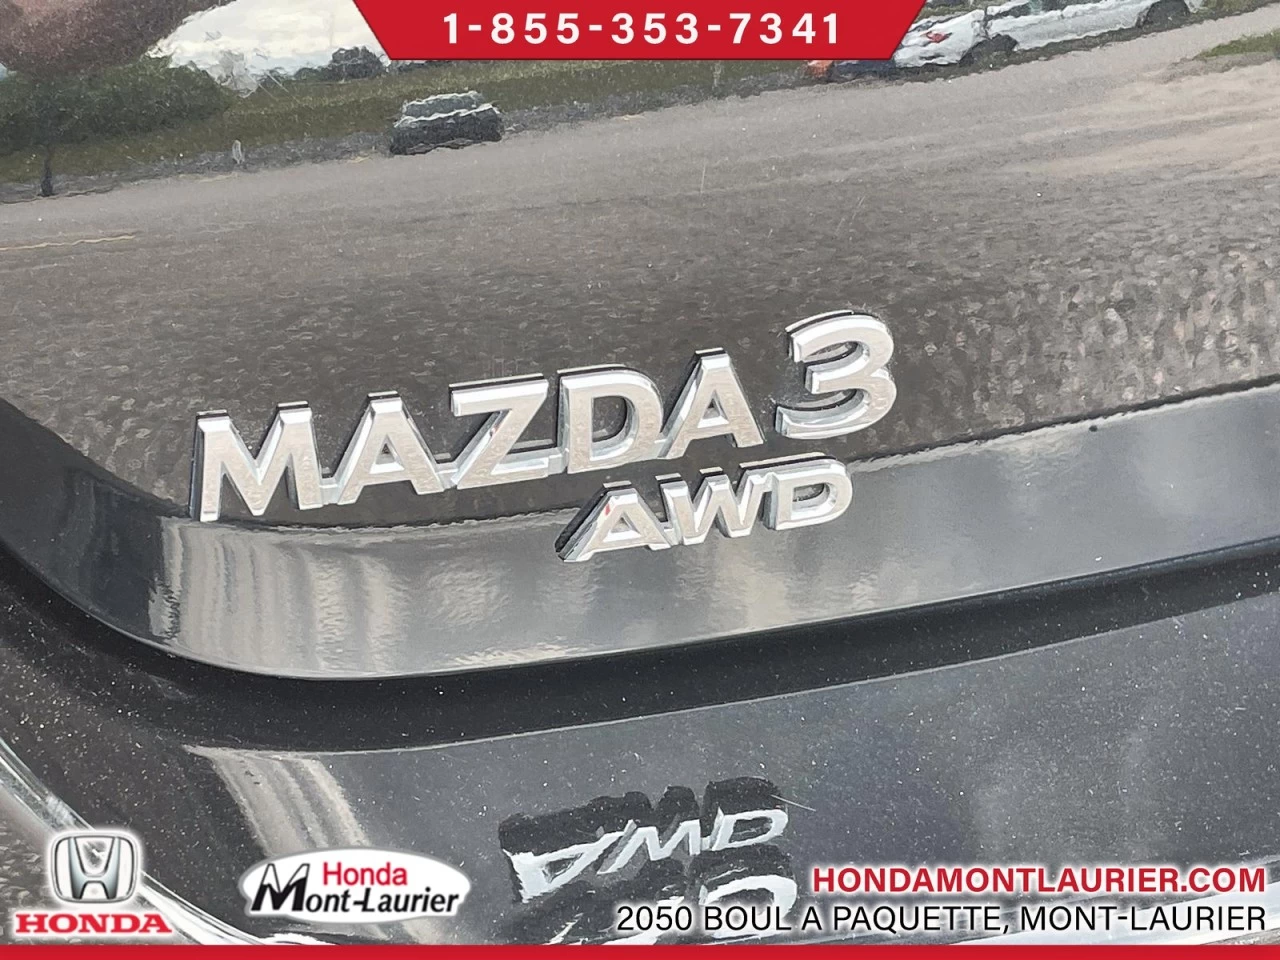 2021 Mazda 3 GT w/Turbo Image principale